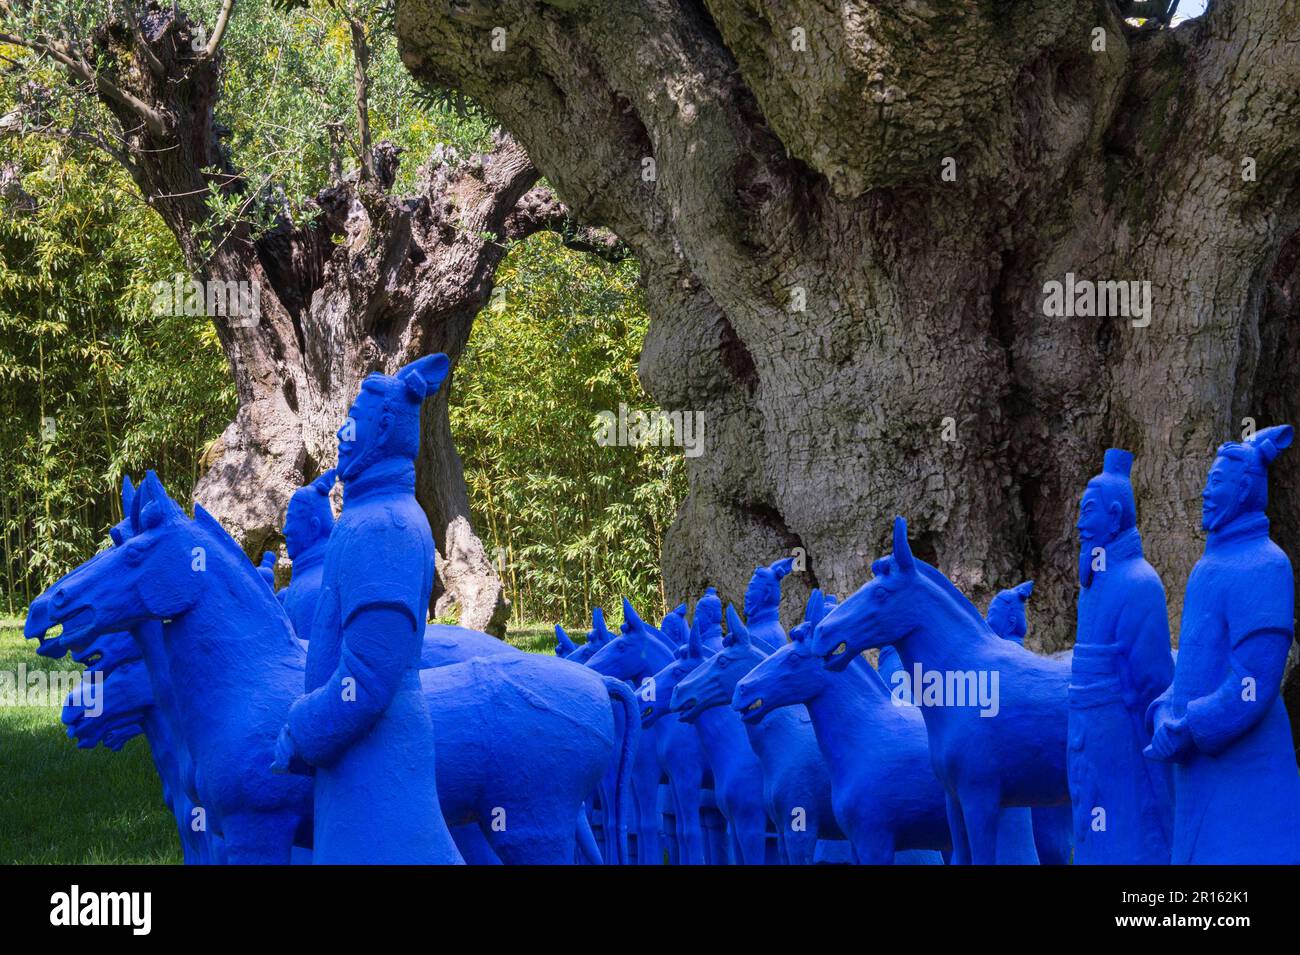 Statue di plastica blu che rappresentano l'esercito di soldati di terracotta cinesi, dietro di loro ulivi millenari, Bacalhoa cantina, Azeitao, Setubal Foto Stock